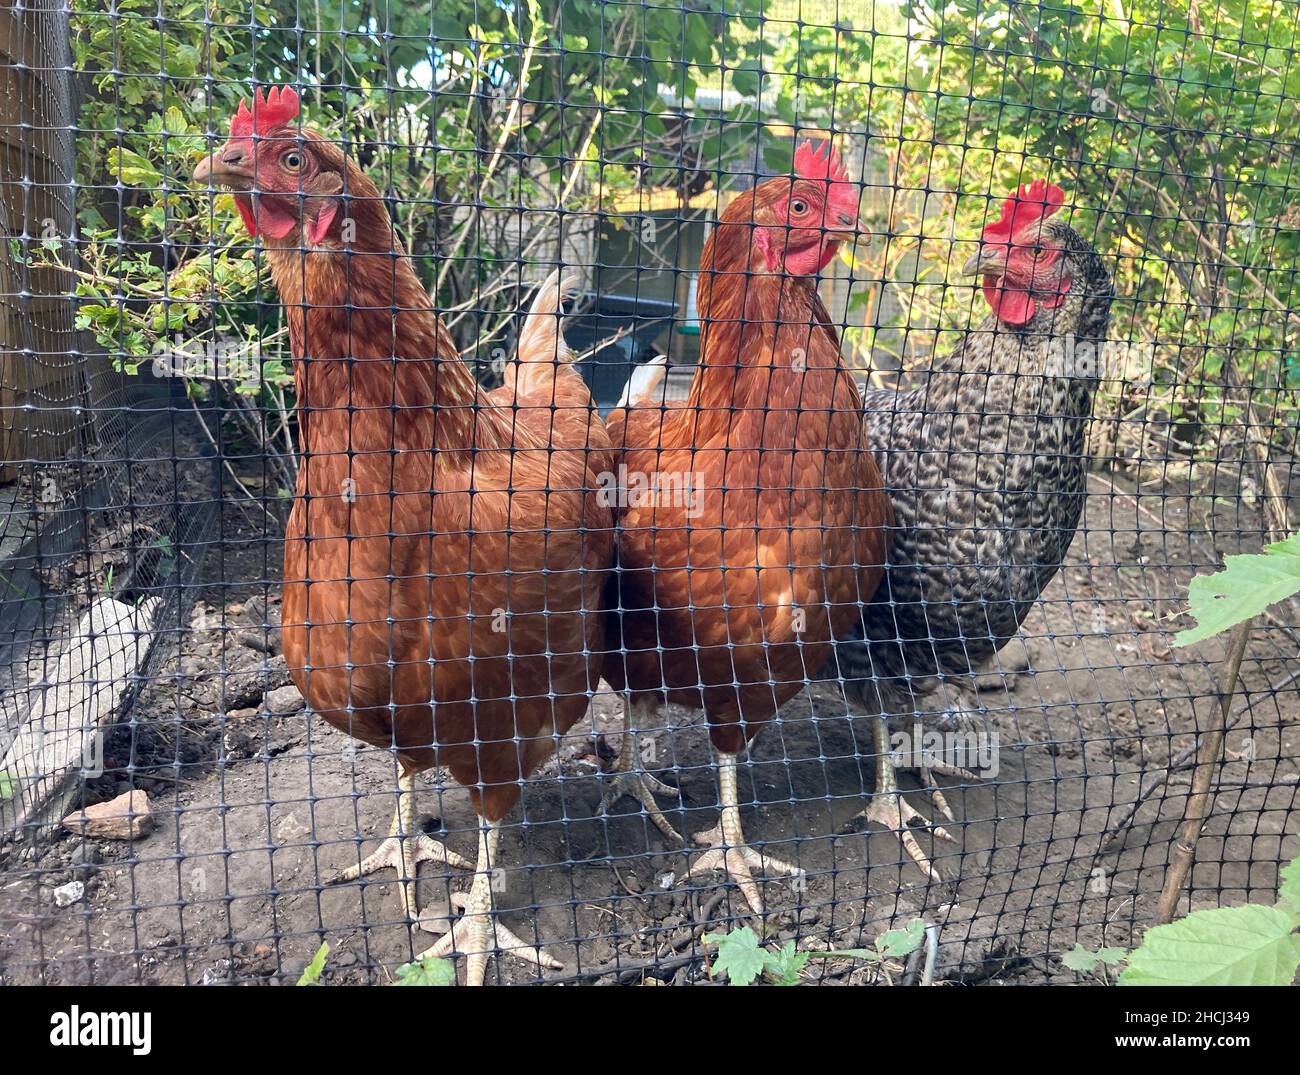 Chicken net /Range net /Poultry - Chicken NET or Range Net